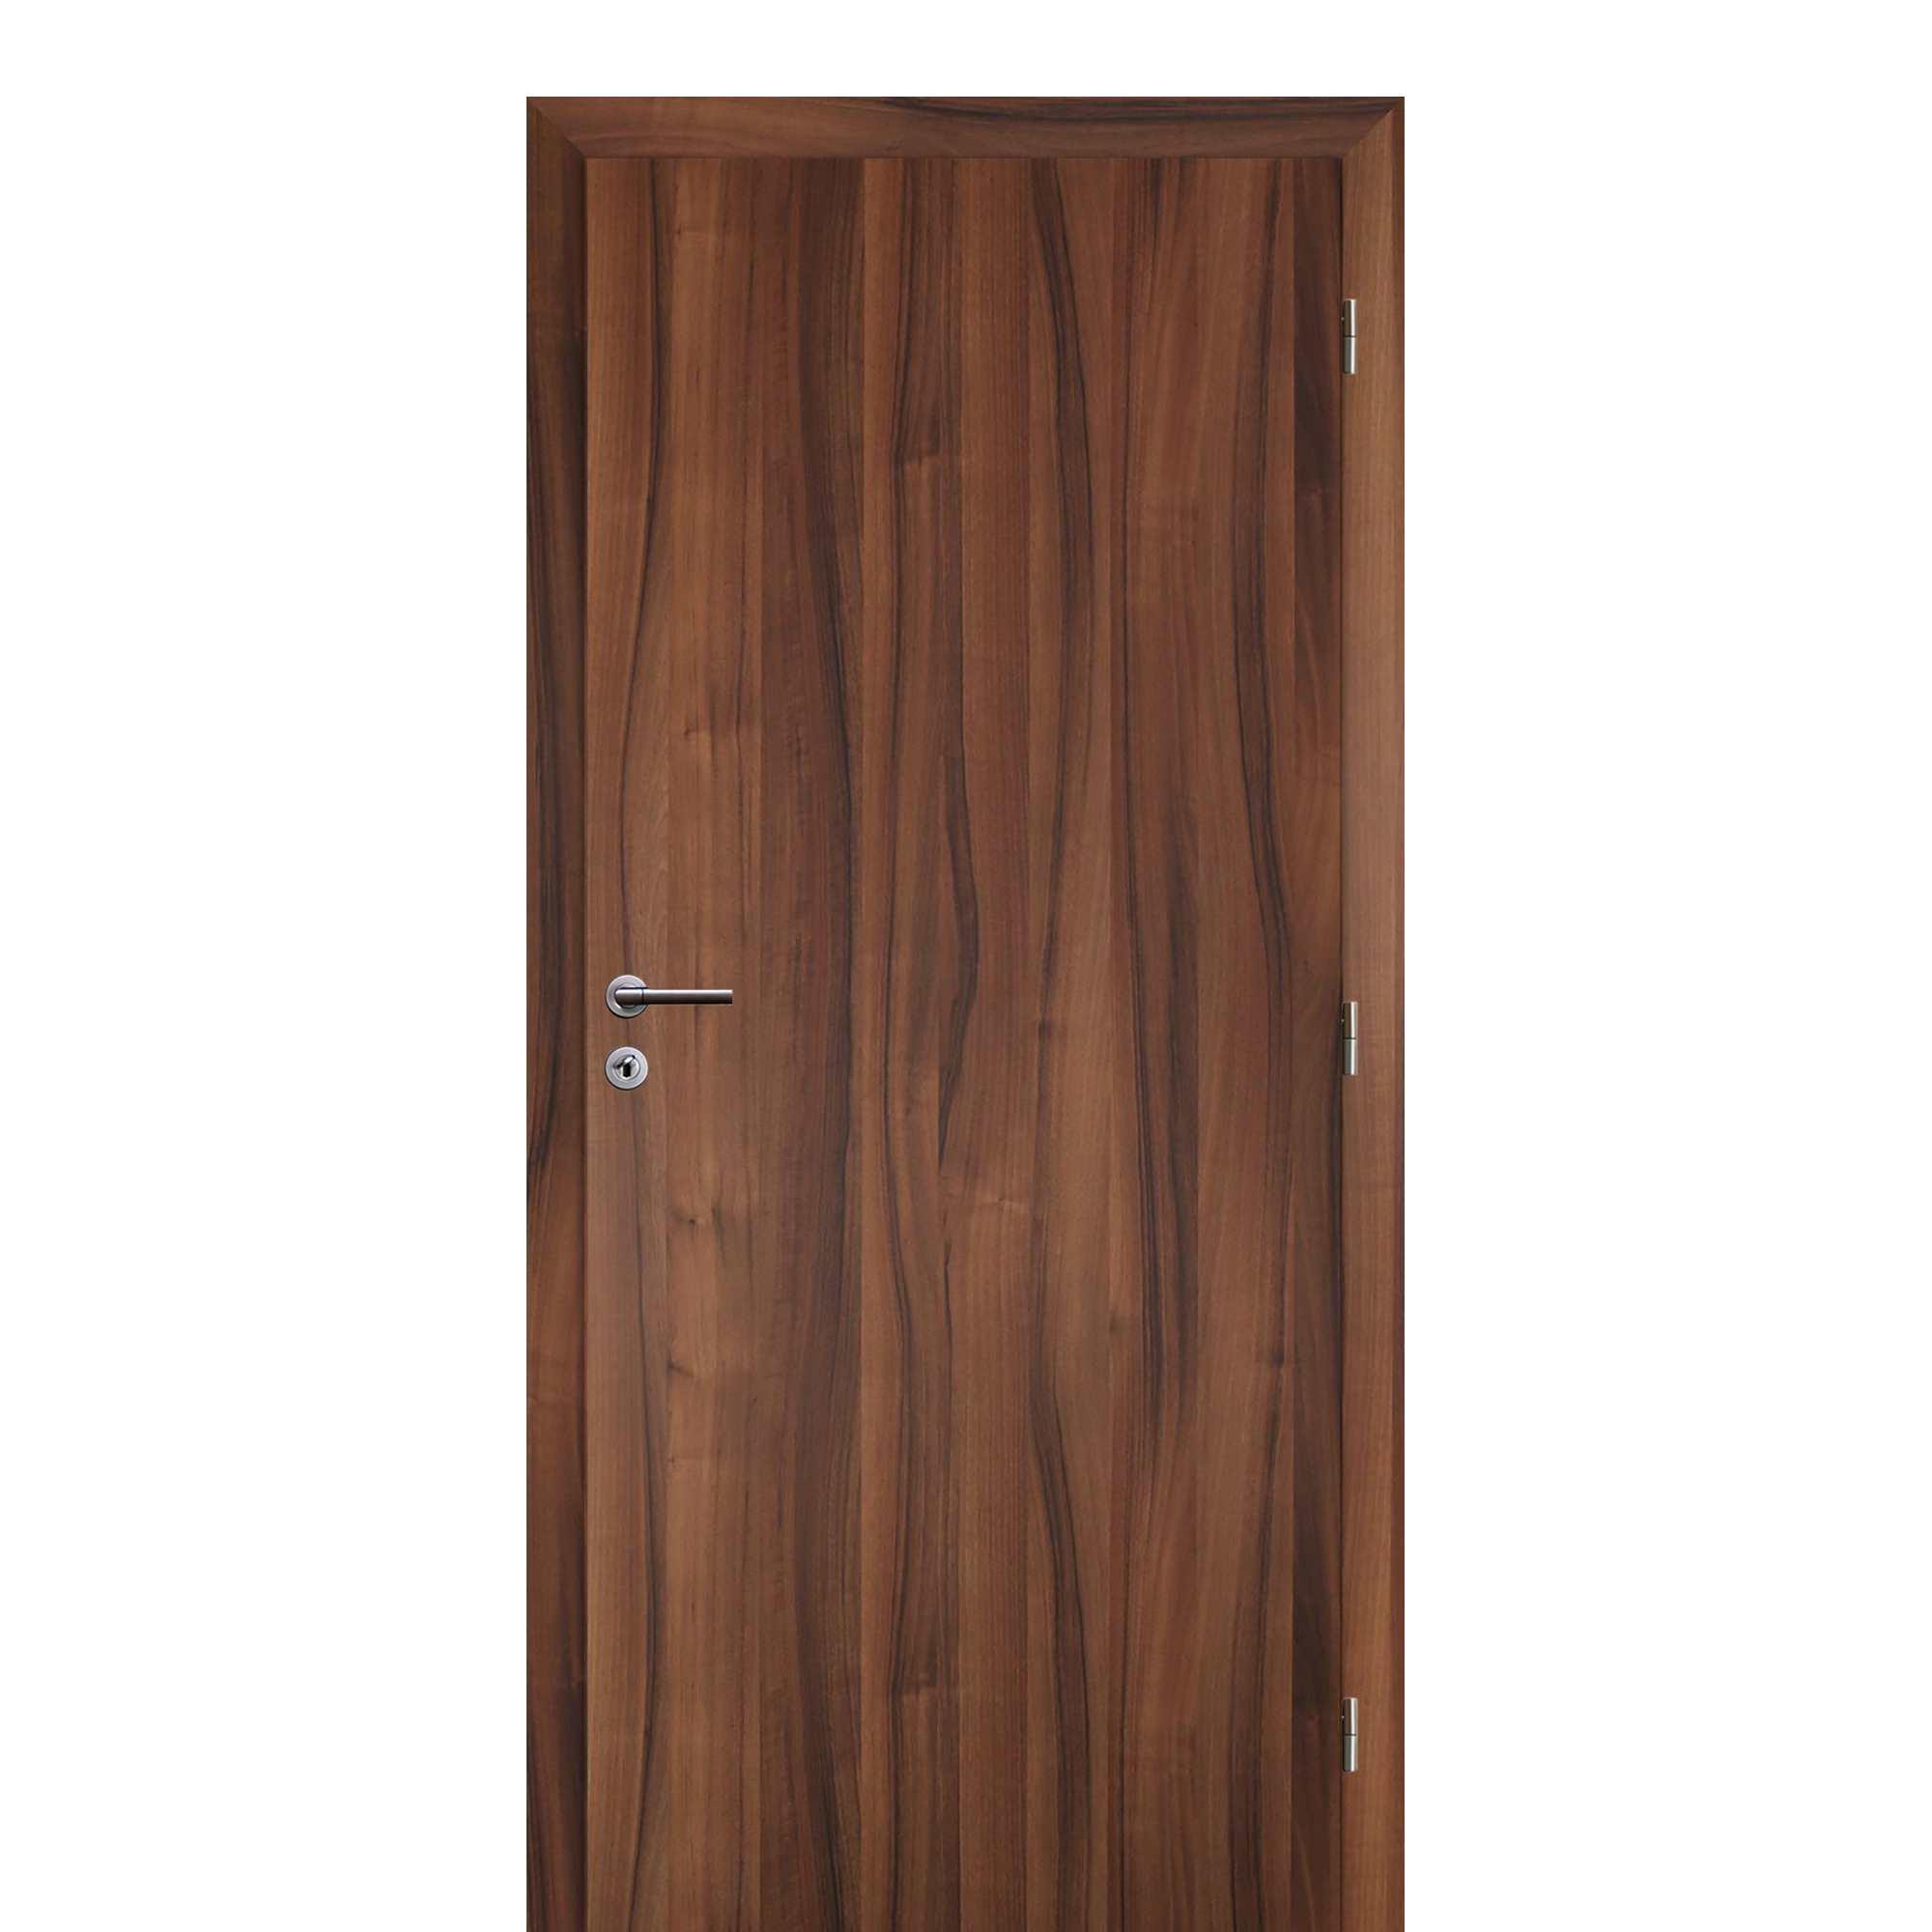 Dveře požárně odolné Solodoor DPOG pravé šířka 900 mm ořech Solodoor a.s.